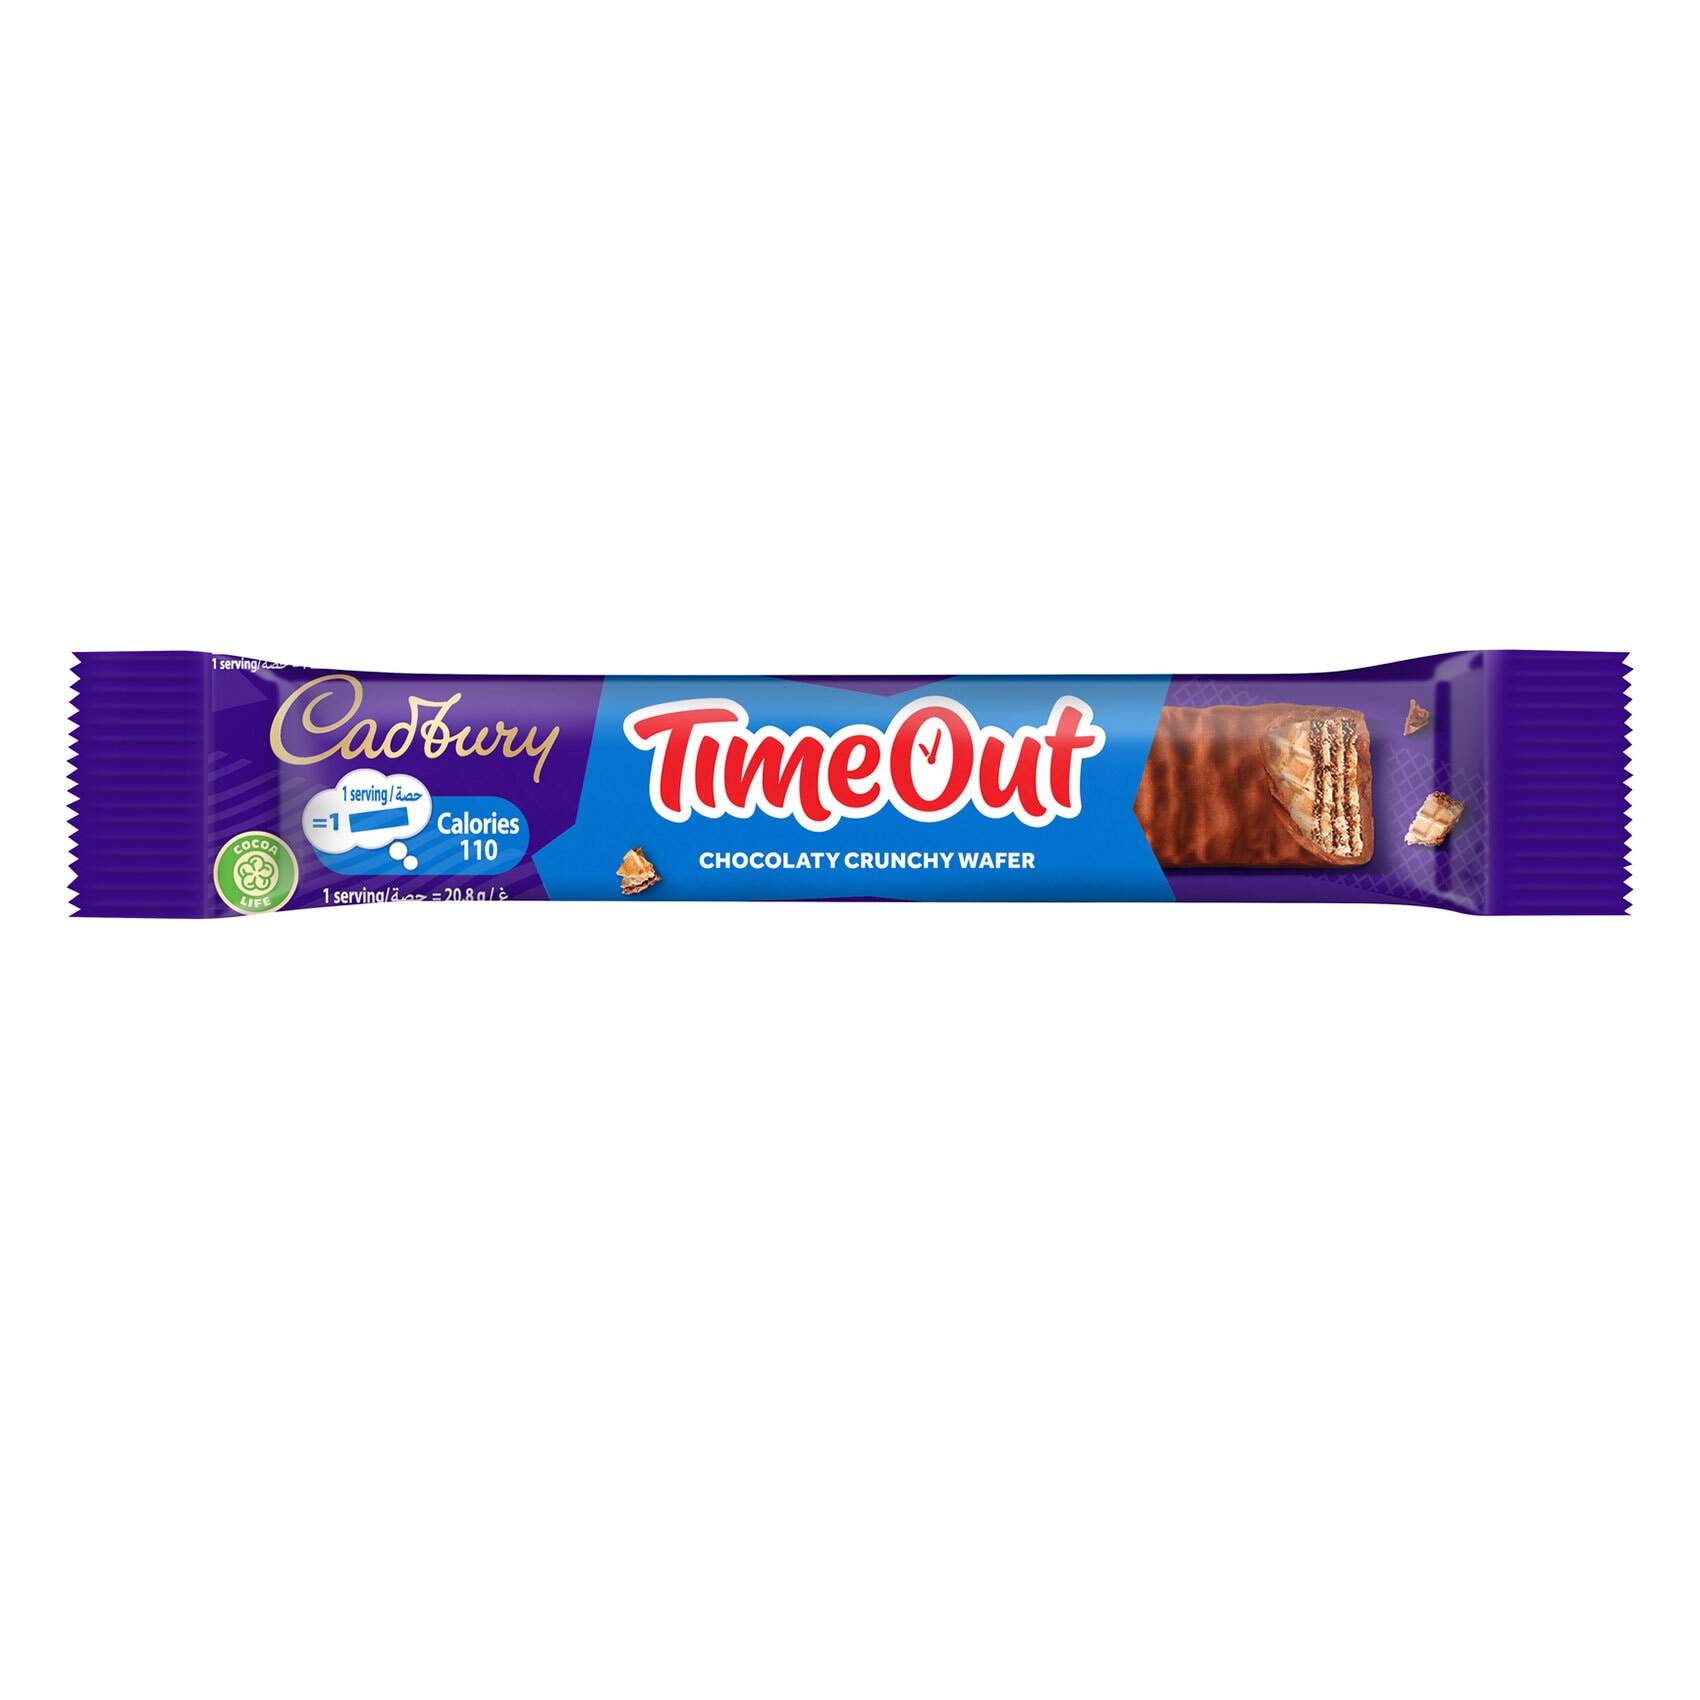 Buy Cadbury Flake Original Chocolate Bar 32g Online - Shop Food Cupboard on  Carrefour UAE